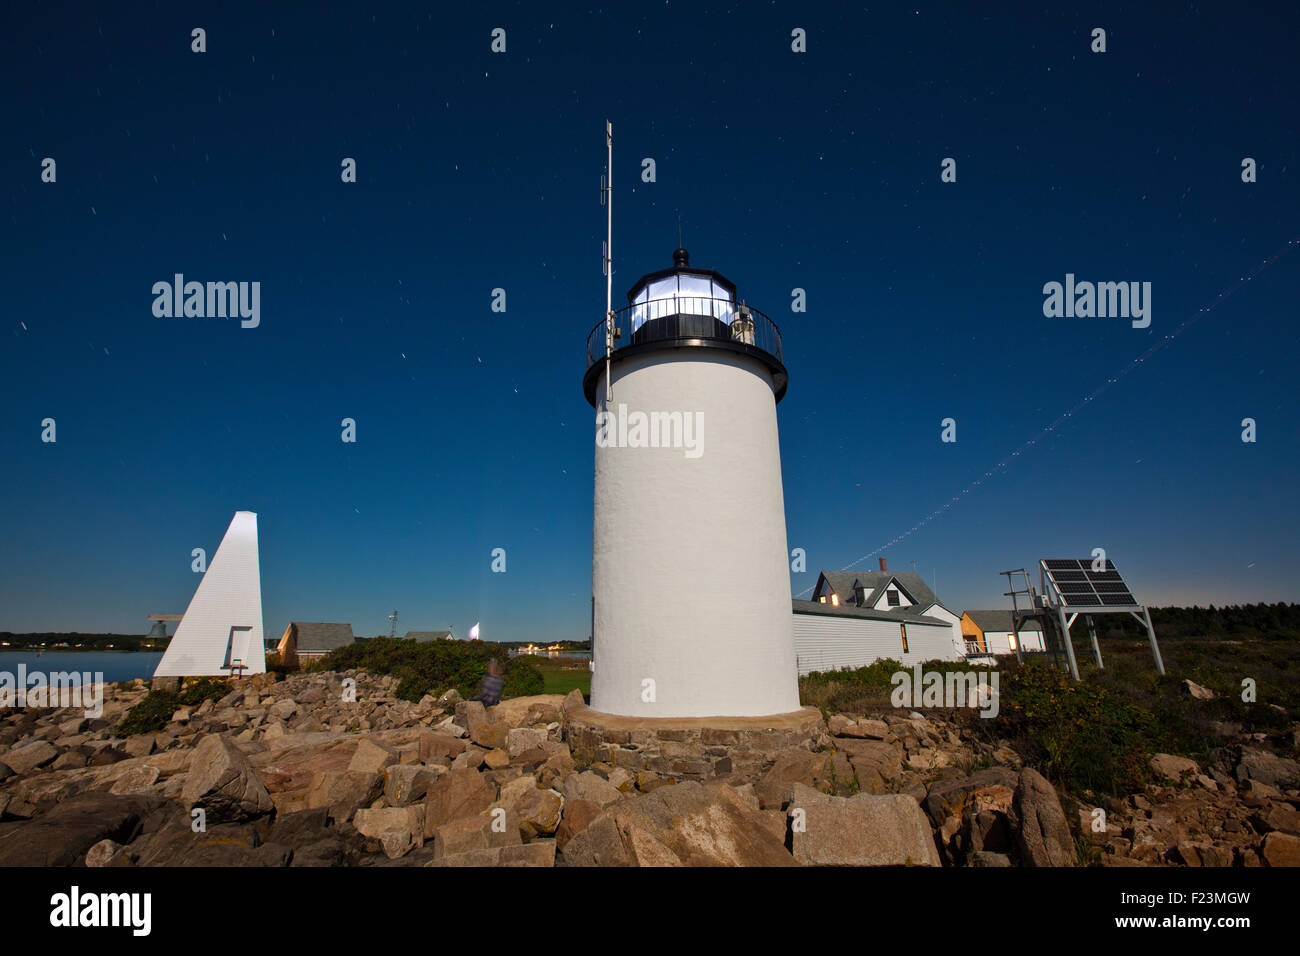 Une longue exposition photographie de nuit de l'île Goat phare avec la lumière qui brille dans le ciel clair lumineux Banque D'Images